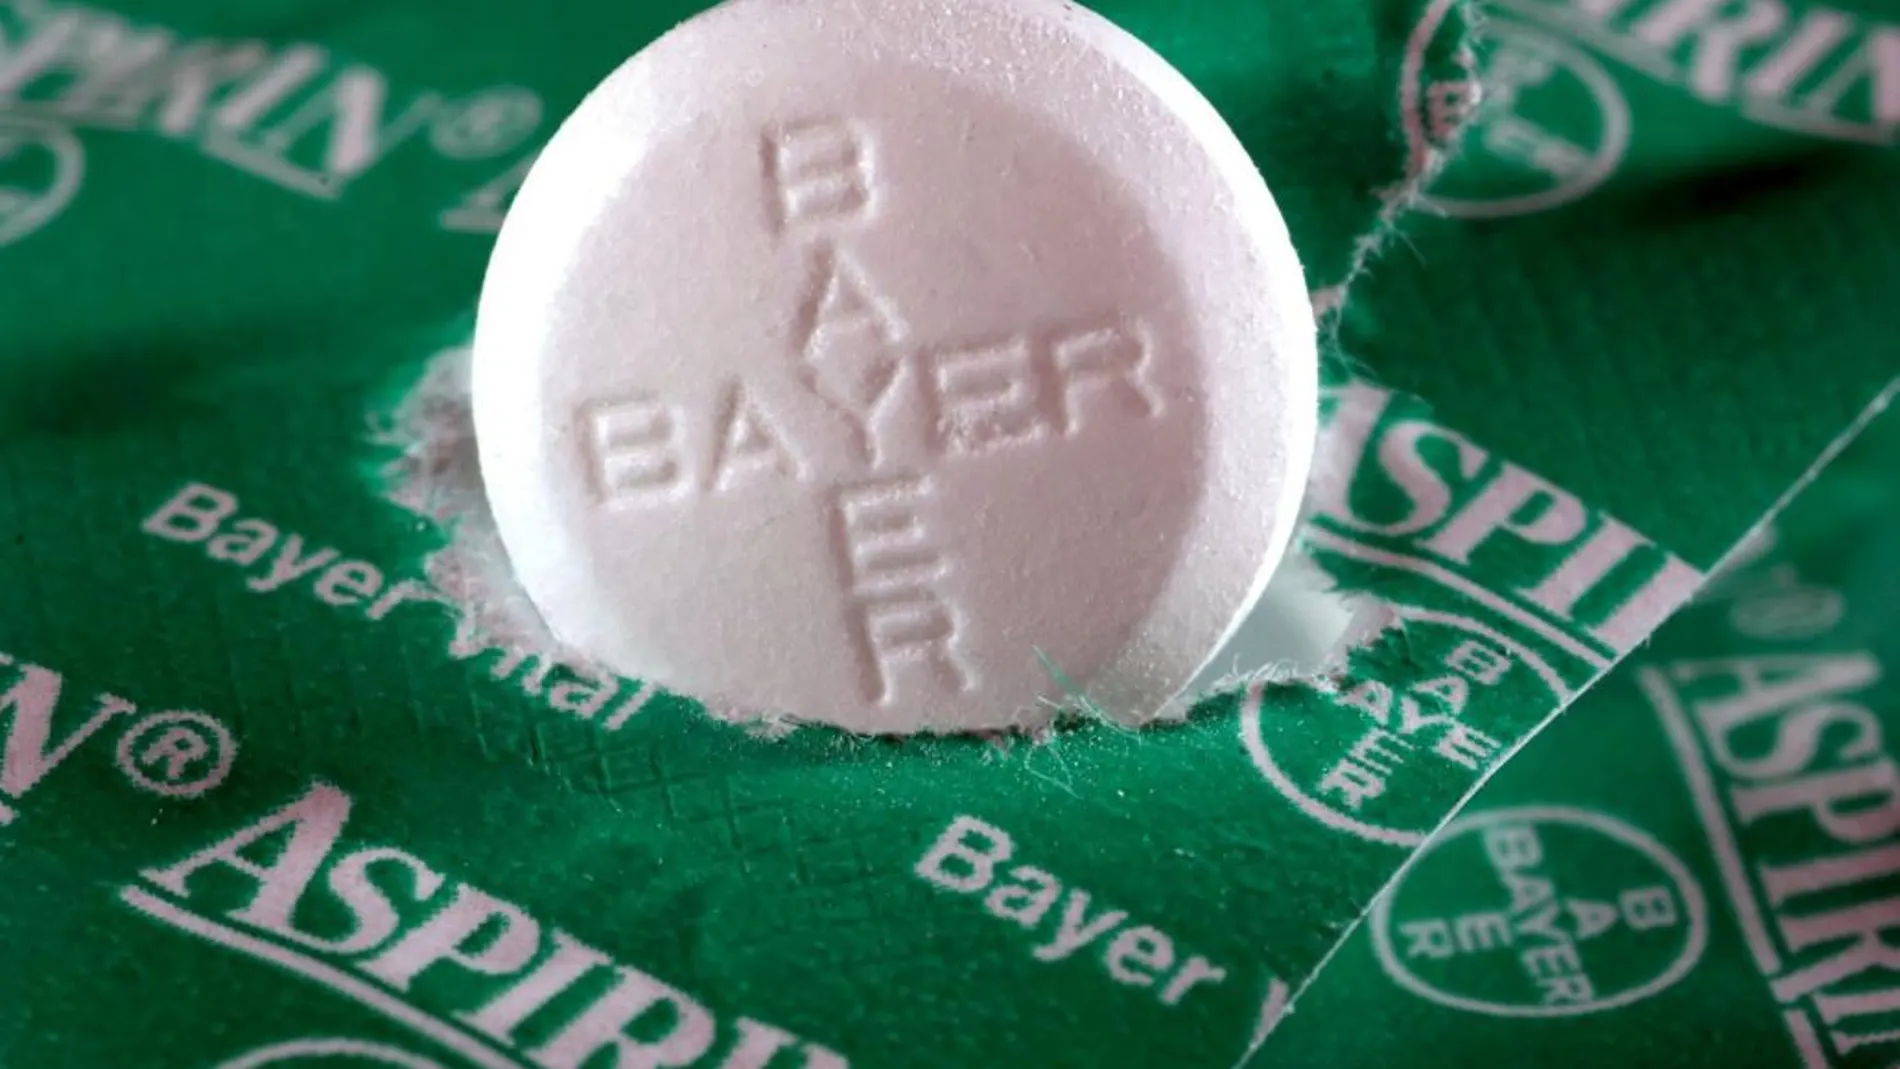 La aspirina puede tener efectos muy positivos en enfermos con cáncer